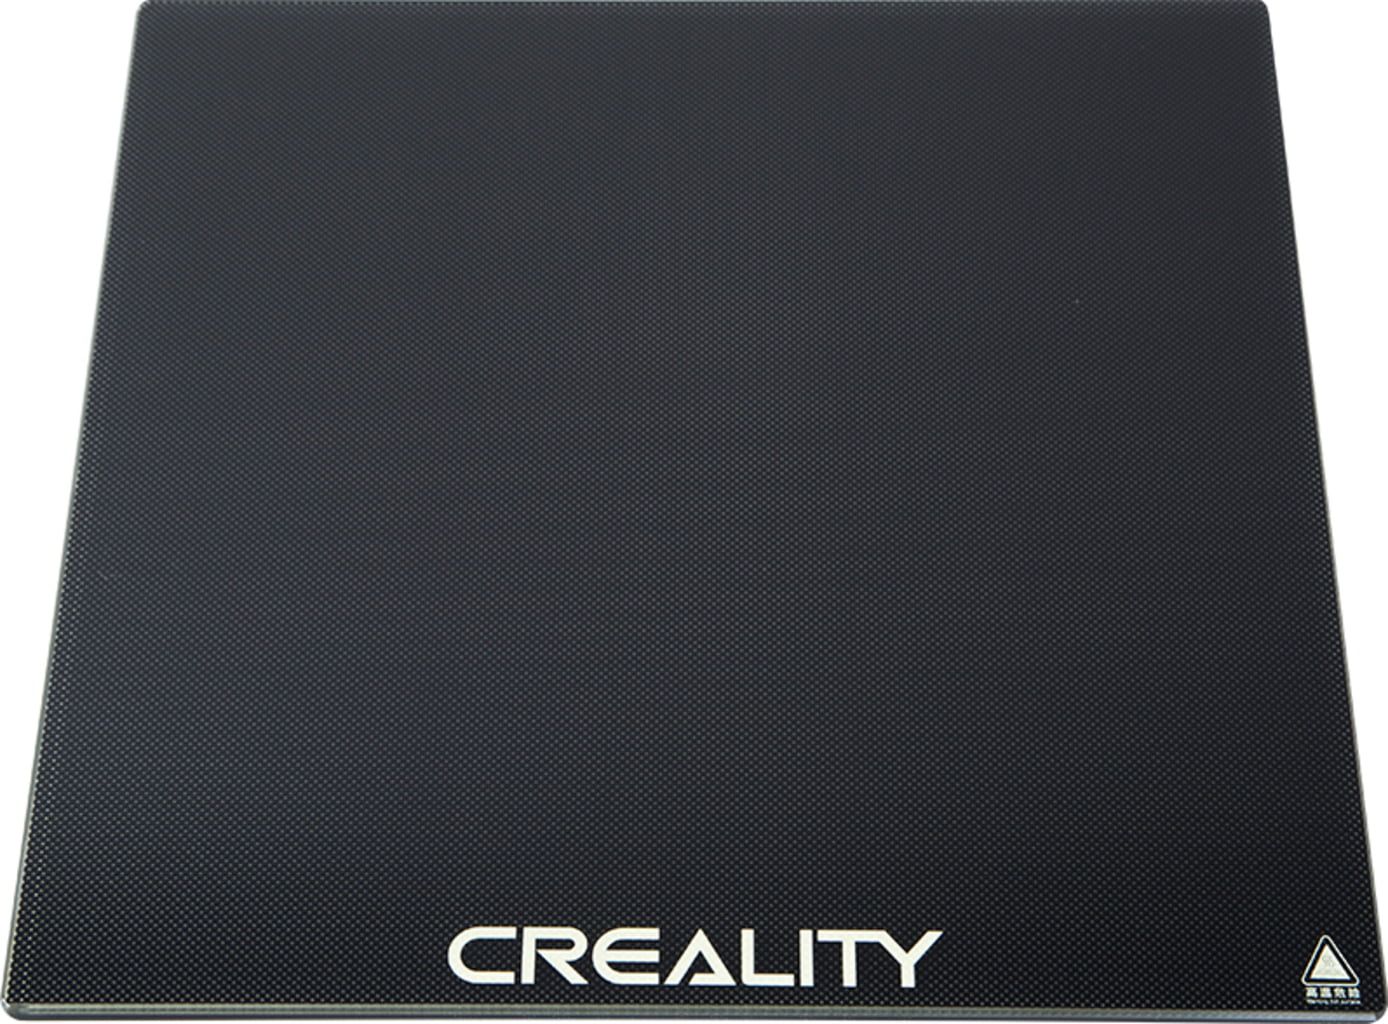 Creality Skleněná karborundová deska - Ender 3